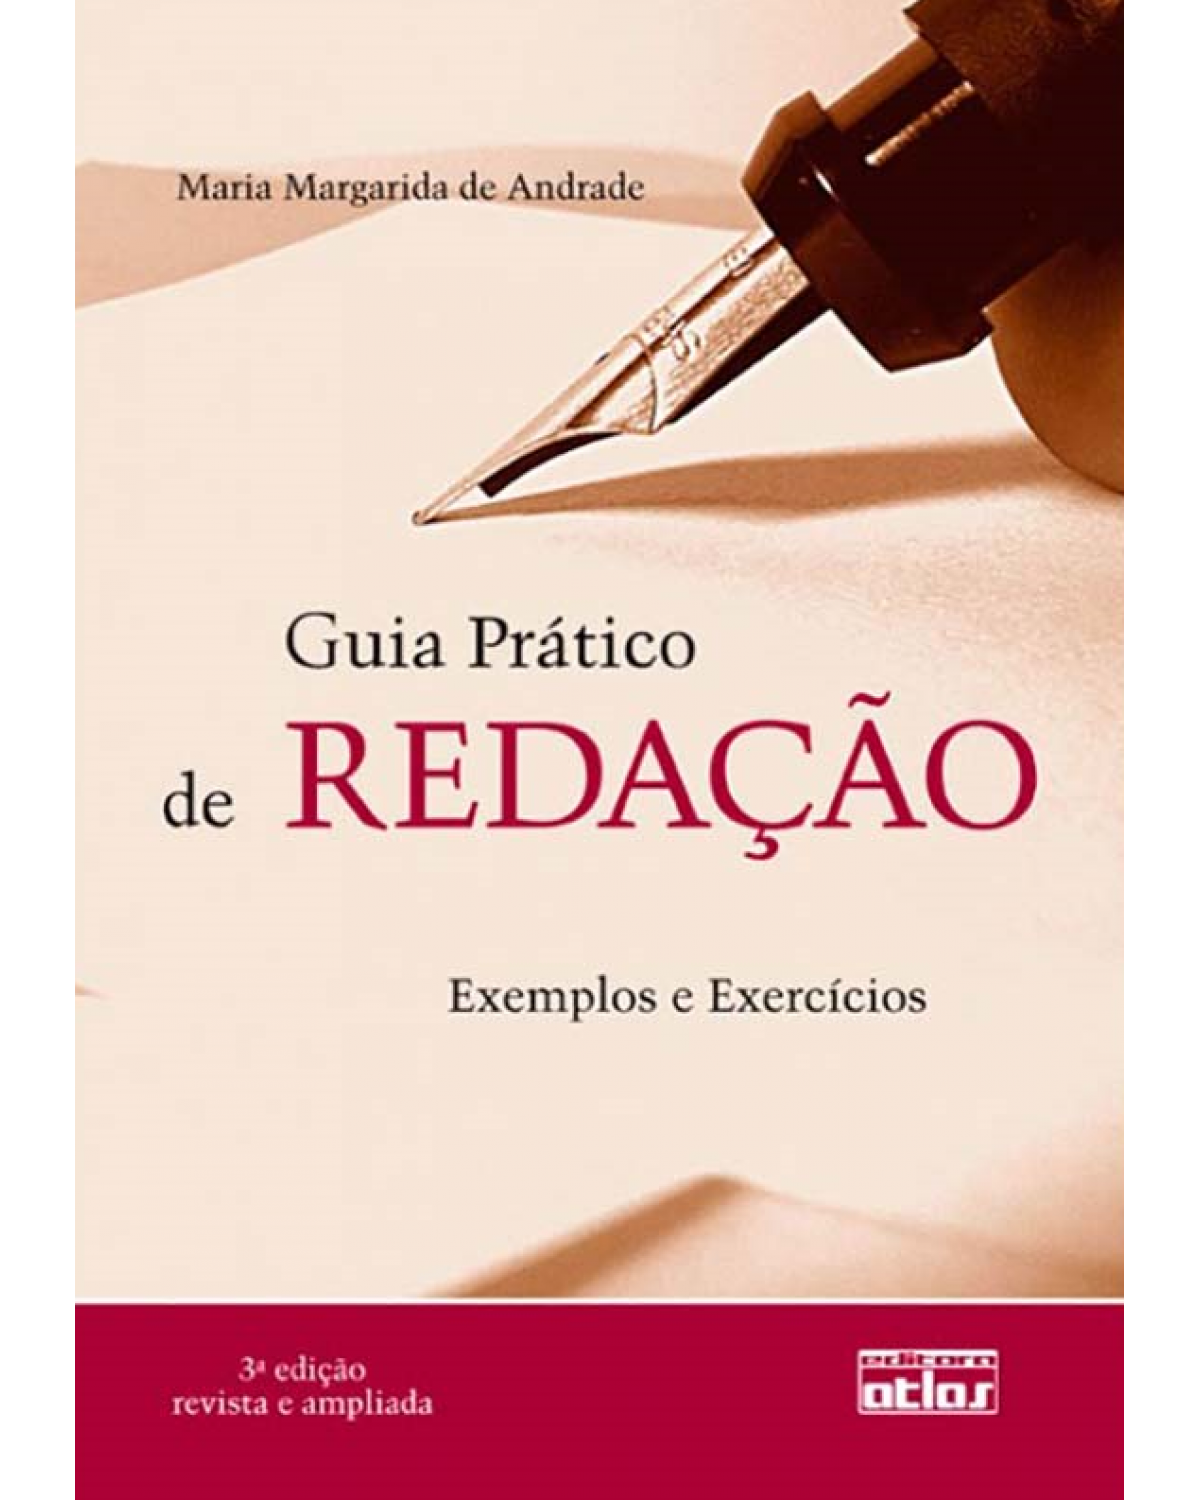 Guia prático de redação - Exemplos e exercícios - 3ª Edição | 2011